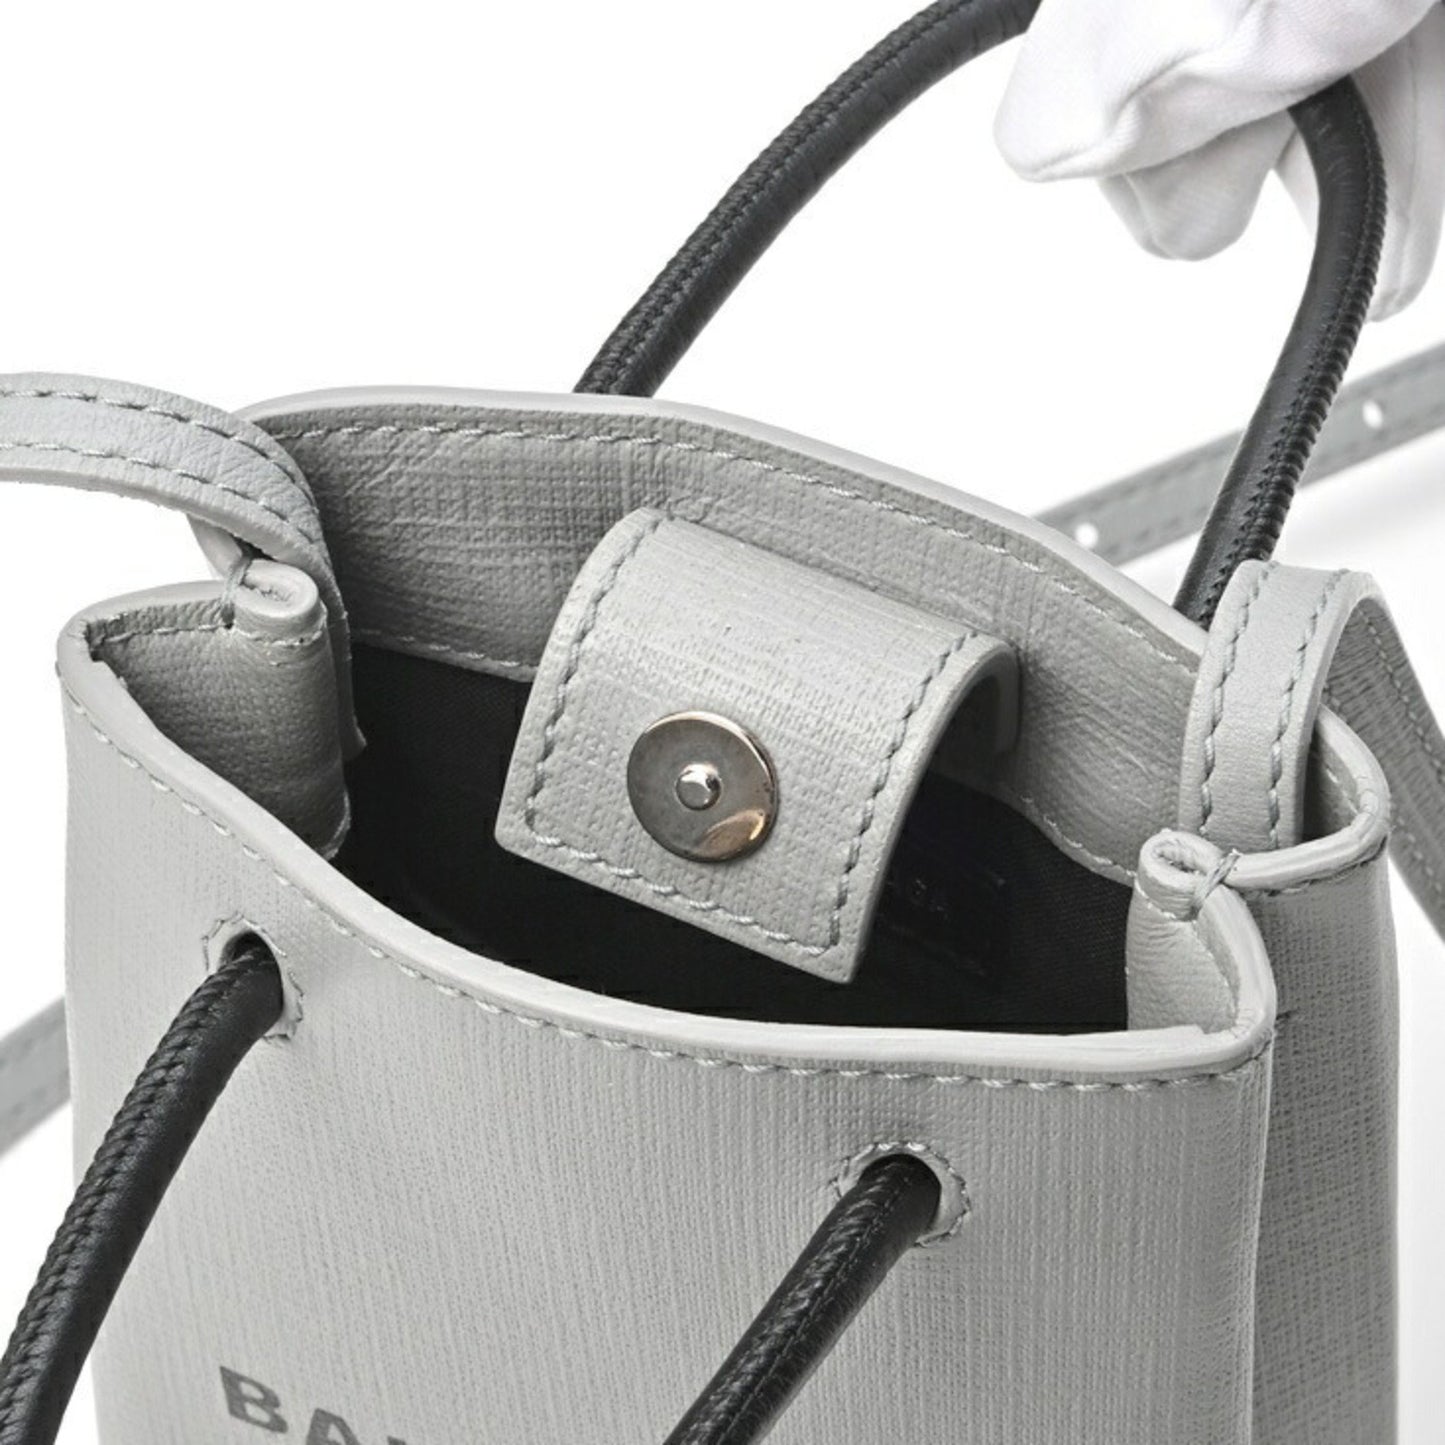 Balenciaga Women's Gray Leather Shoulder Bag by Balenciaga in Grey